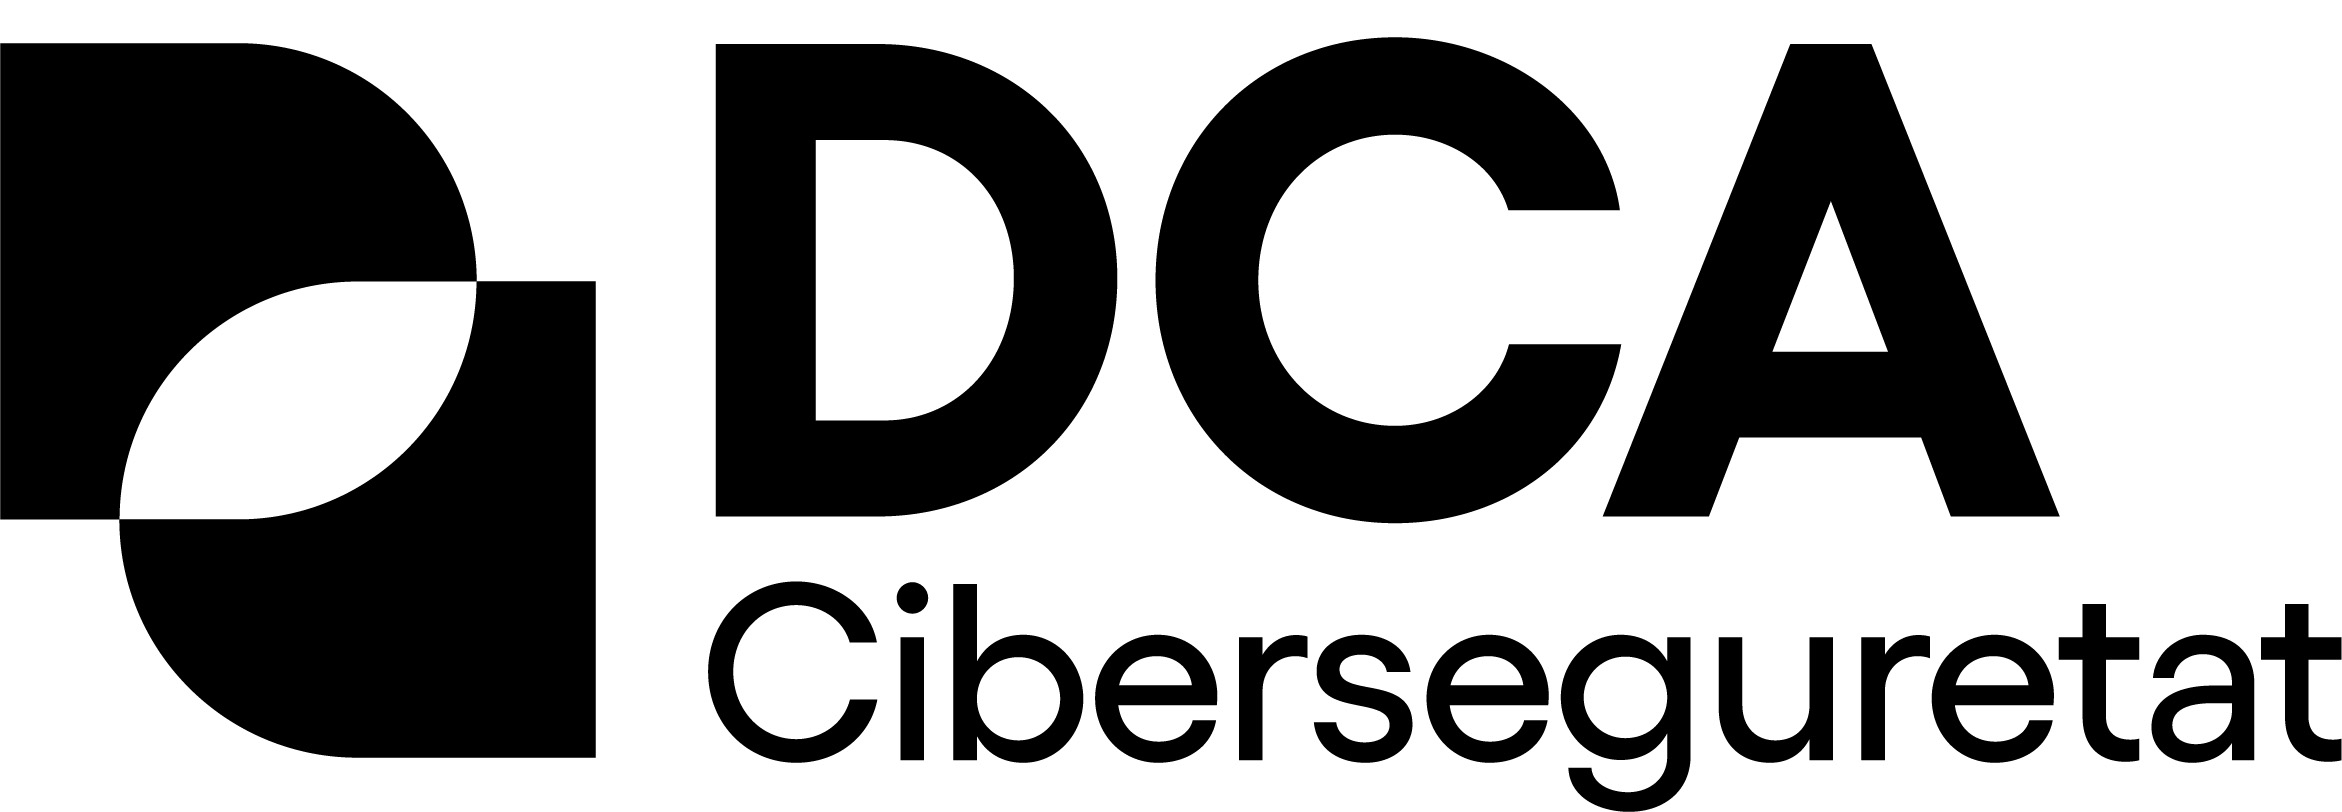 DCA CiberseguretatDCA Ciberseguretat